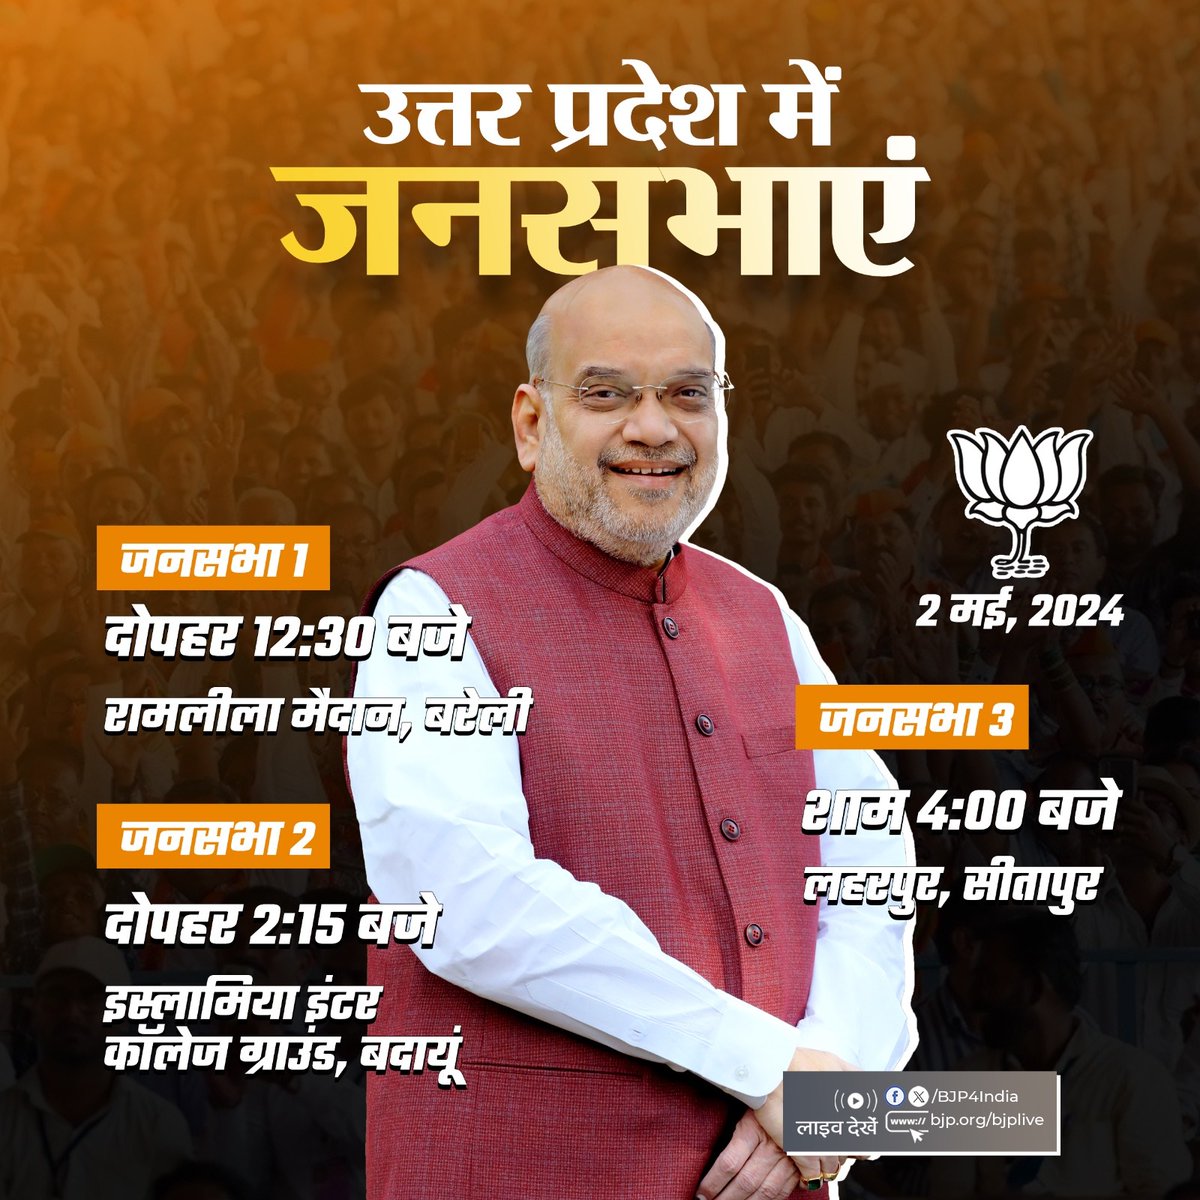 केन्द्रीय गृह एवं सहकारिता मंत्री श्री @AmitShah 2 मई, 2024 को उत्तर प्रदेश में विभिन्न जनसभाओं को सम्बोधित करेंगे। लाइव देखें: 📺twitter.com/BJP4India 📺facebook.com/BJP4India 📺youtube.com/BJP4India 📺bjp.org/bjplive